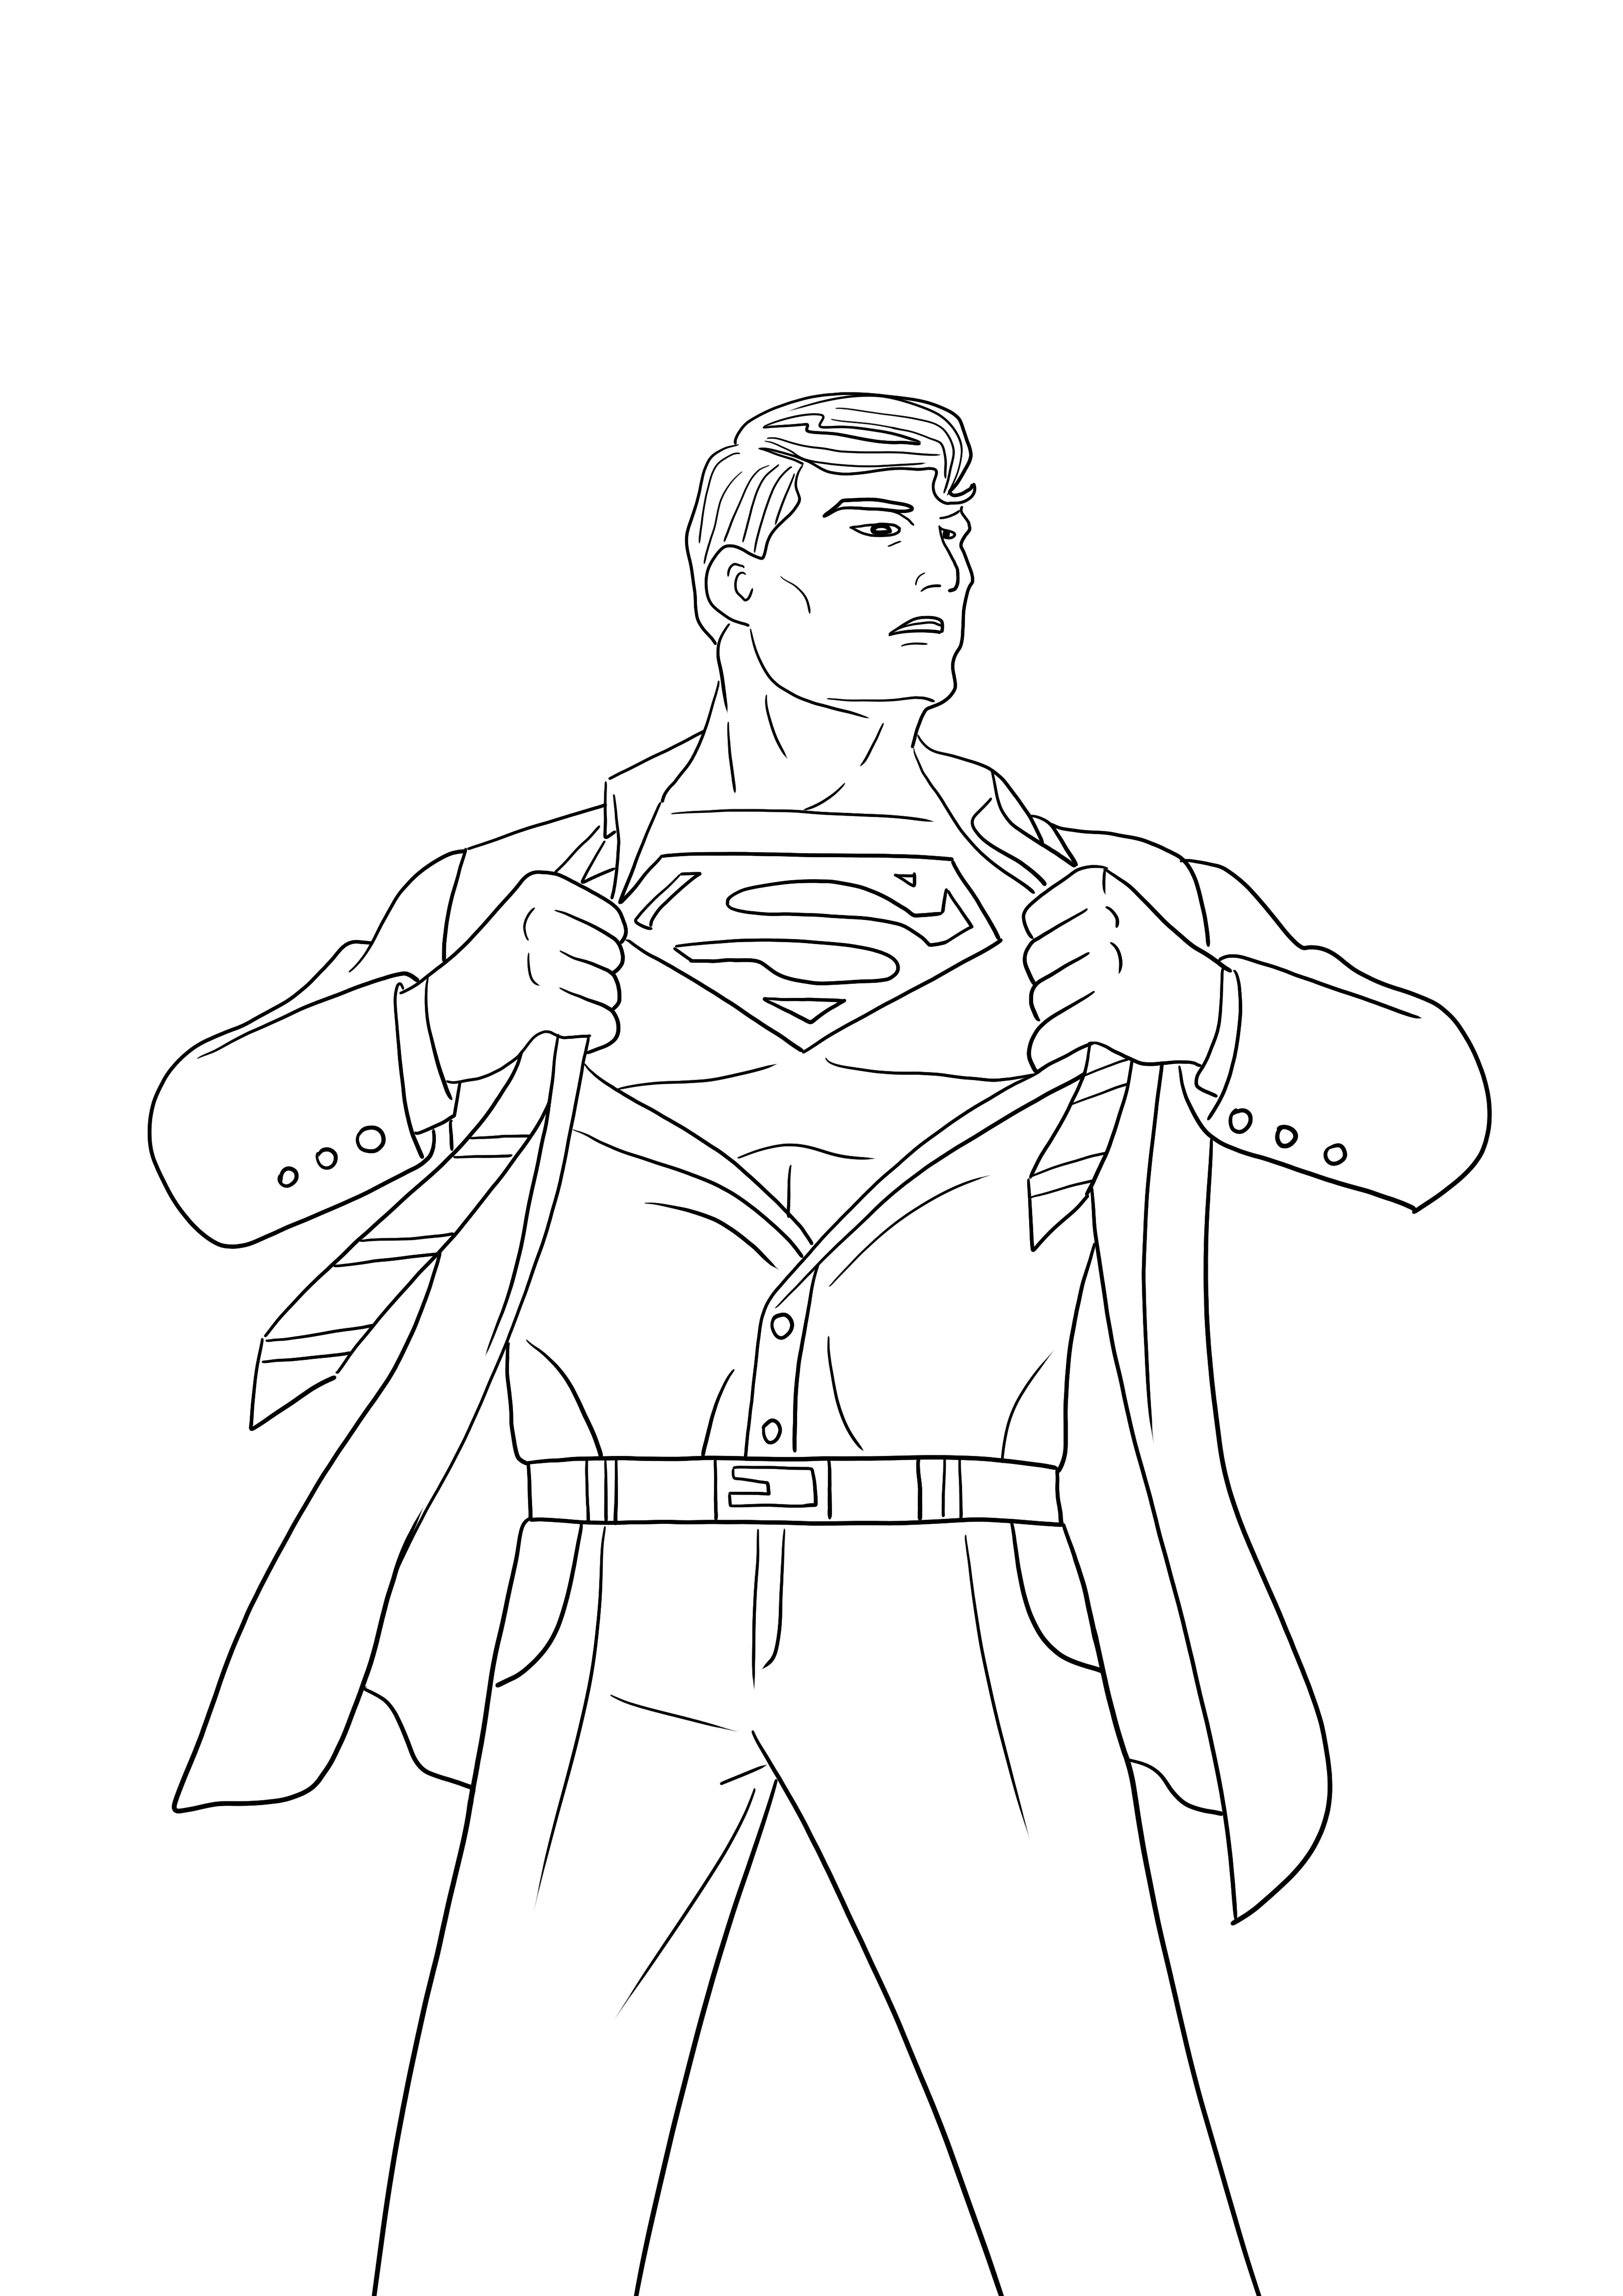 Superman ujawnia swoją tożsamość bez drukowania i kolorowania obrazu